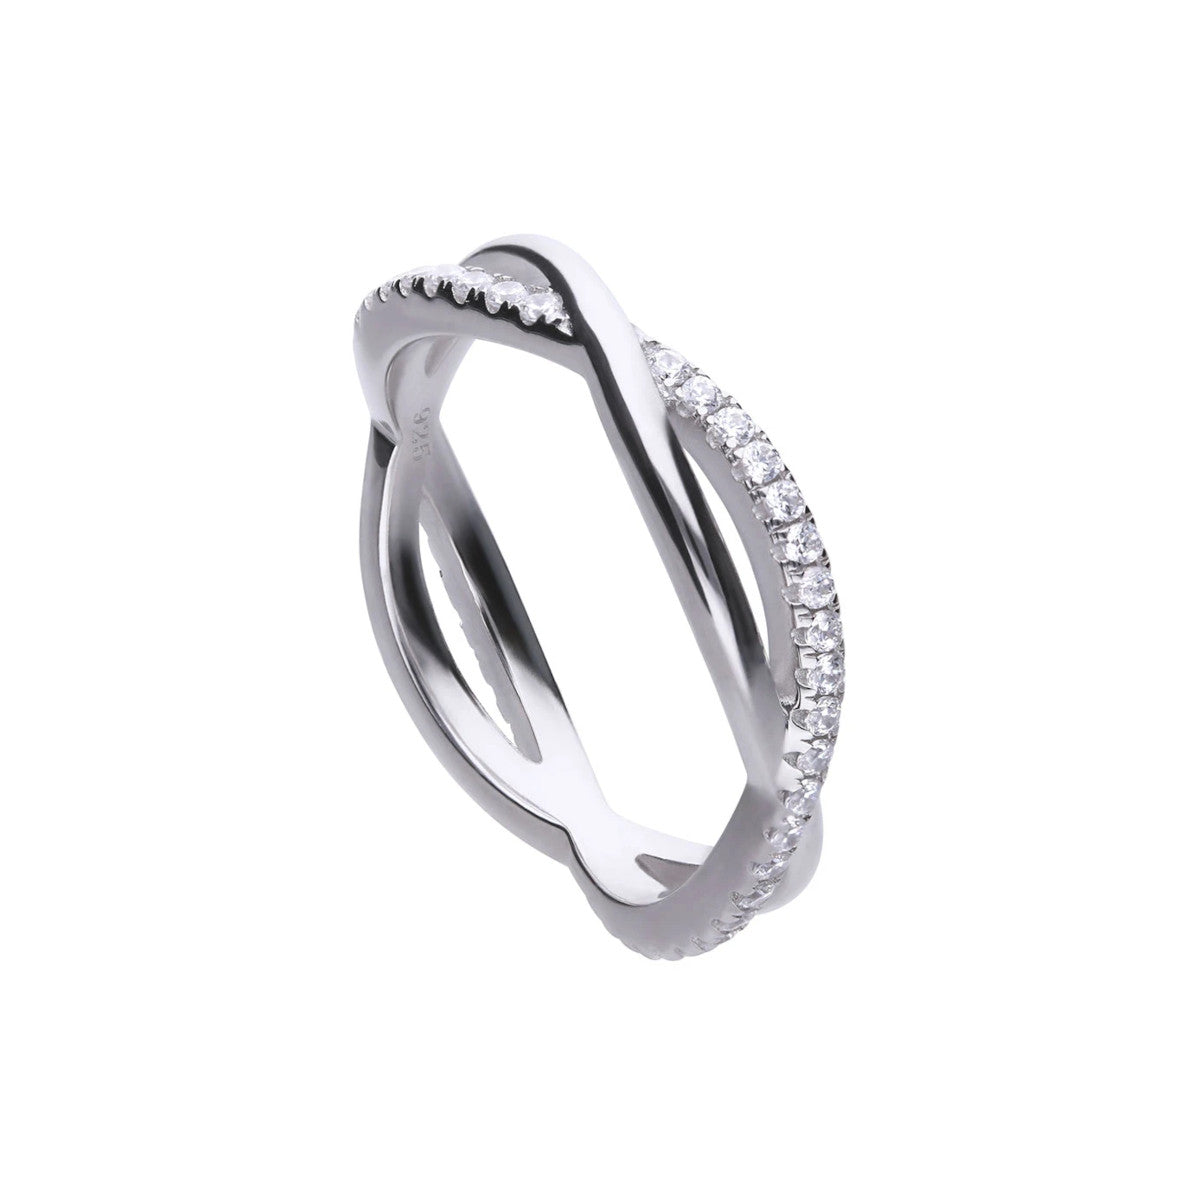 anello diamonfire in argento lega palladio con foglia di platino e copertura finale di rodio. intreccio con zirconi bianchi e argento lucidato a specchio.